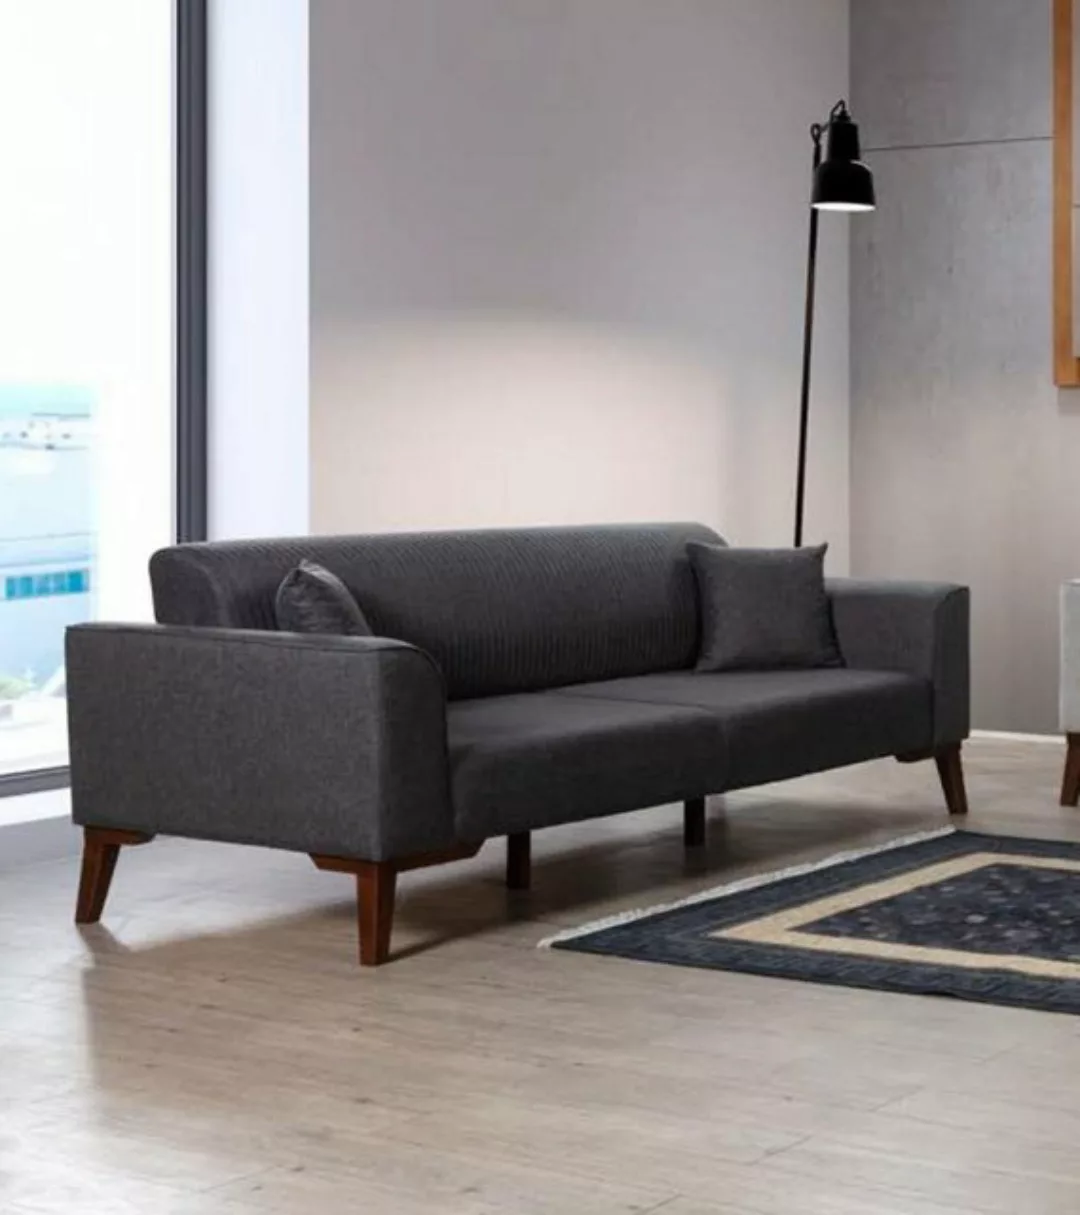 JVmoebel Sofa Luxus Dreisitzer Sofa 3 Sitzer Design Möbel Couchen Grau Neu günstig online kaufen